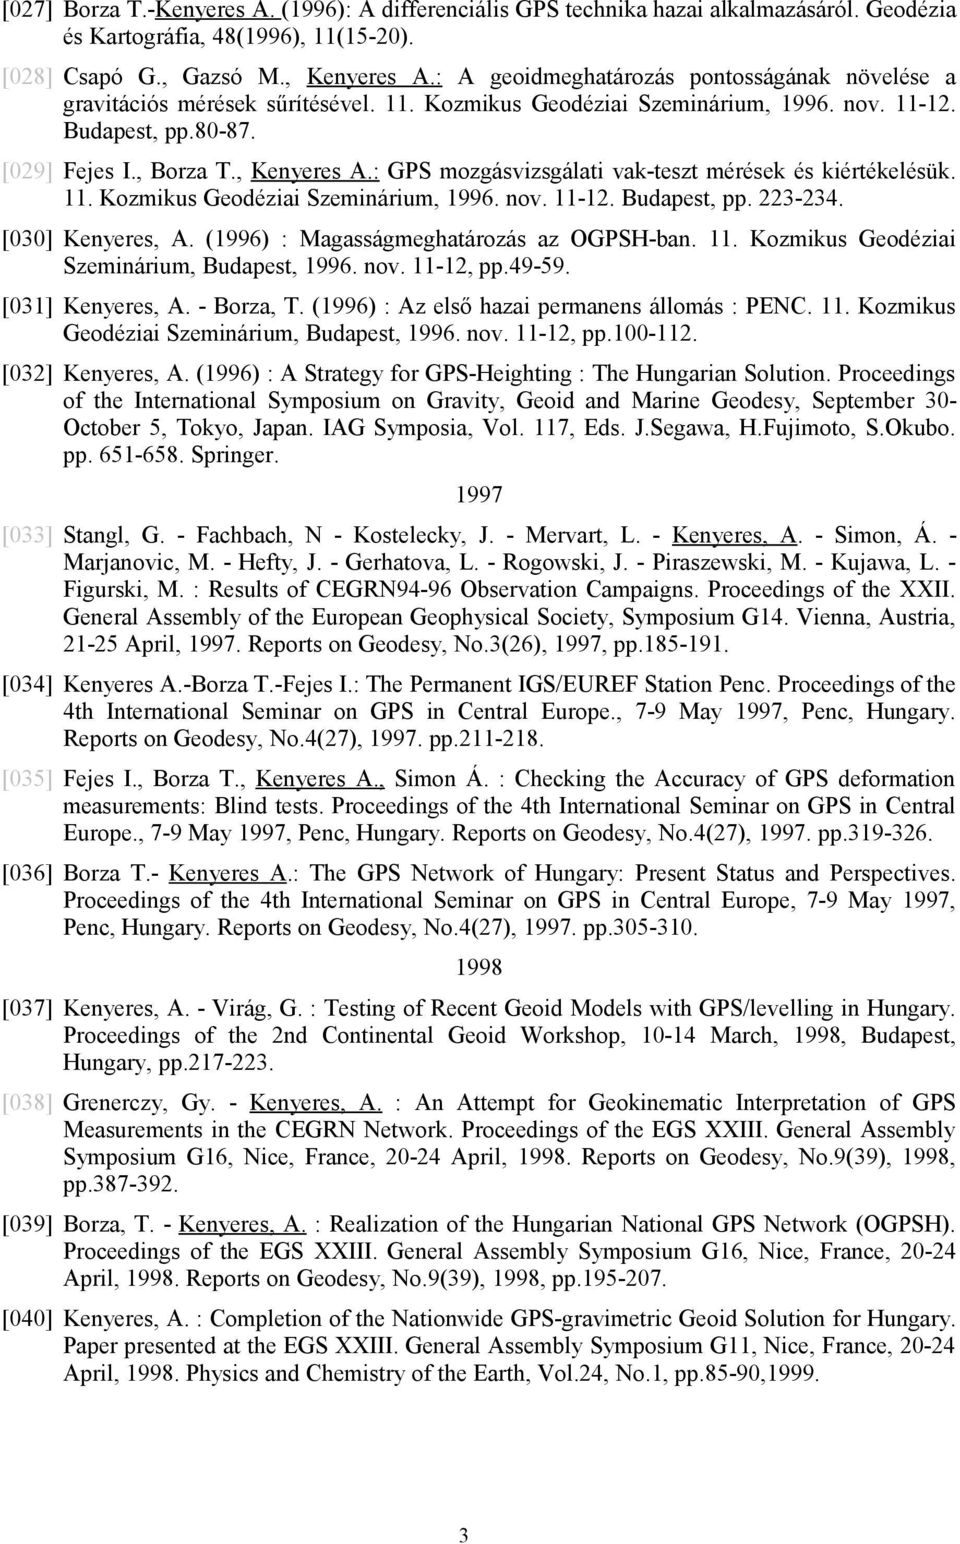 : GPS mozgásvizsgálati vak-teszt mérések és kiértékelésük. 11. Kozmikus Geodéziai Szeminárium, 1996. nov. 11-12. Budapest, pp. 223-234. [030] Kenyeres, A. (1996) : Magasságmeghatározás az OGPSH-ban.